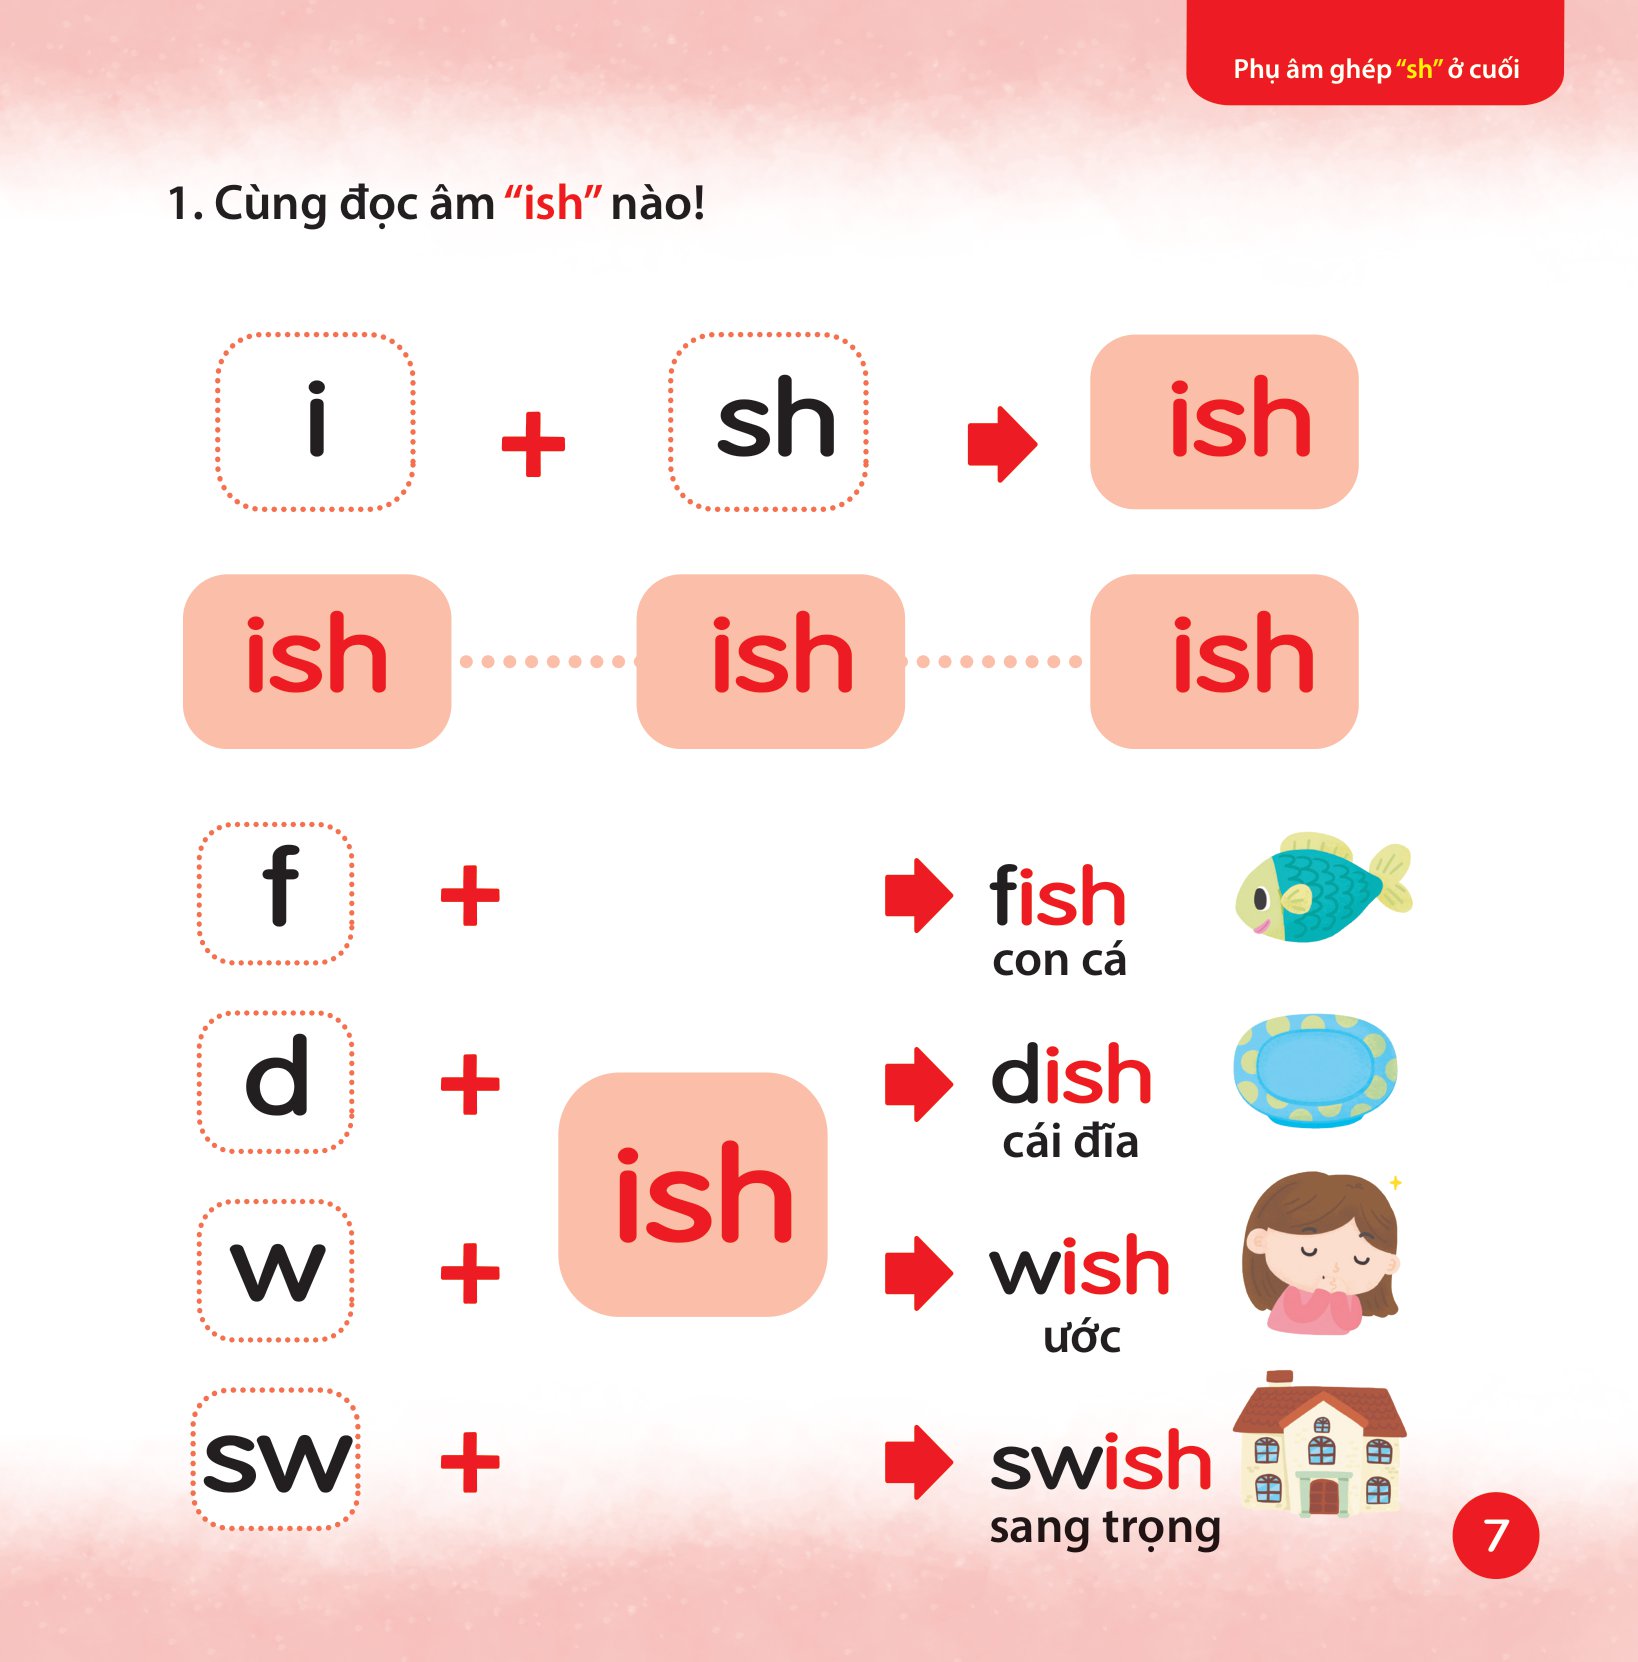 Cùng Con Học Ngữ Âm Tiếng Anh Qua 3 Cấp Độ - Phụ Âm Ghép PDF